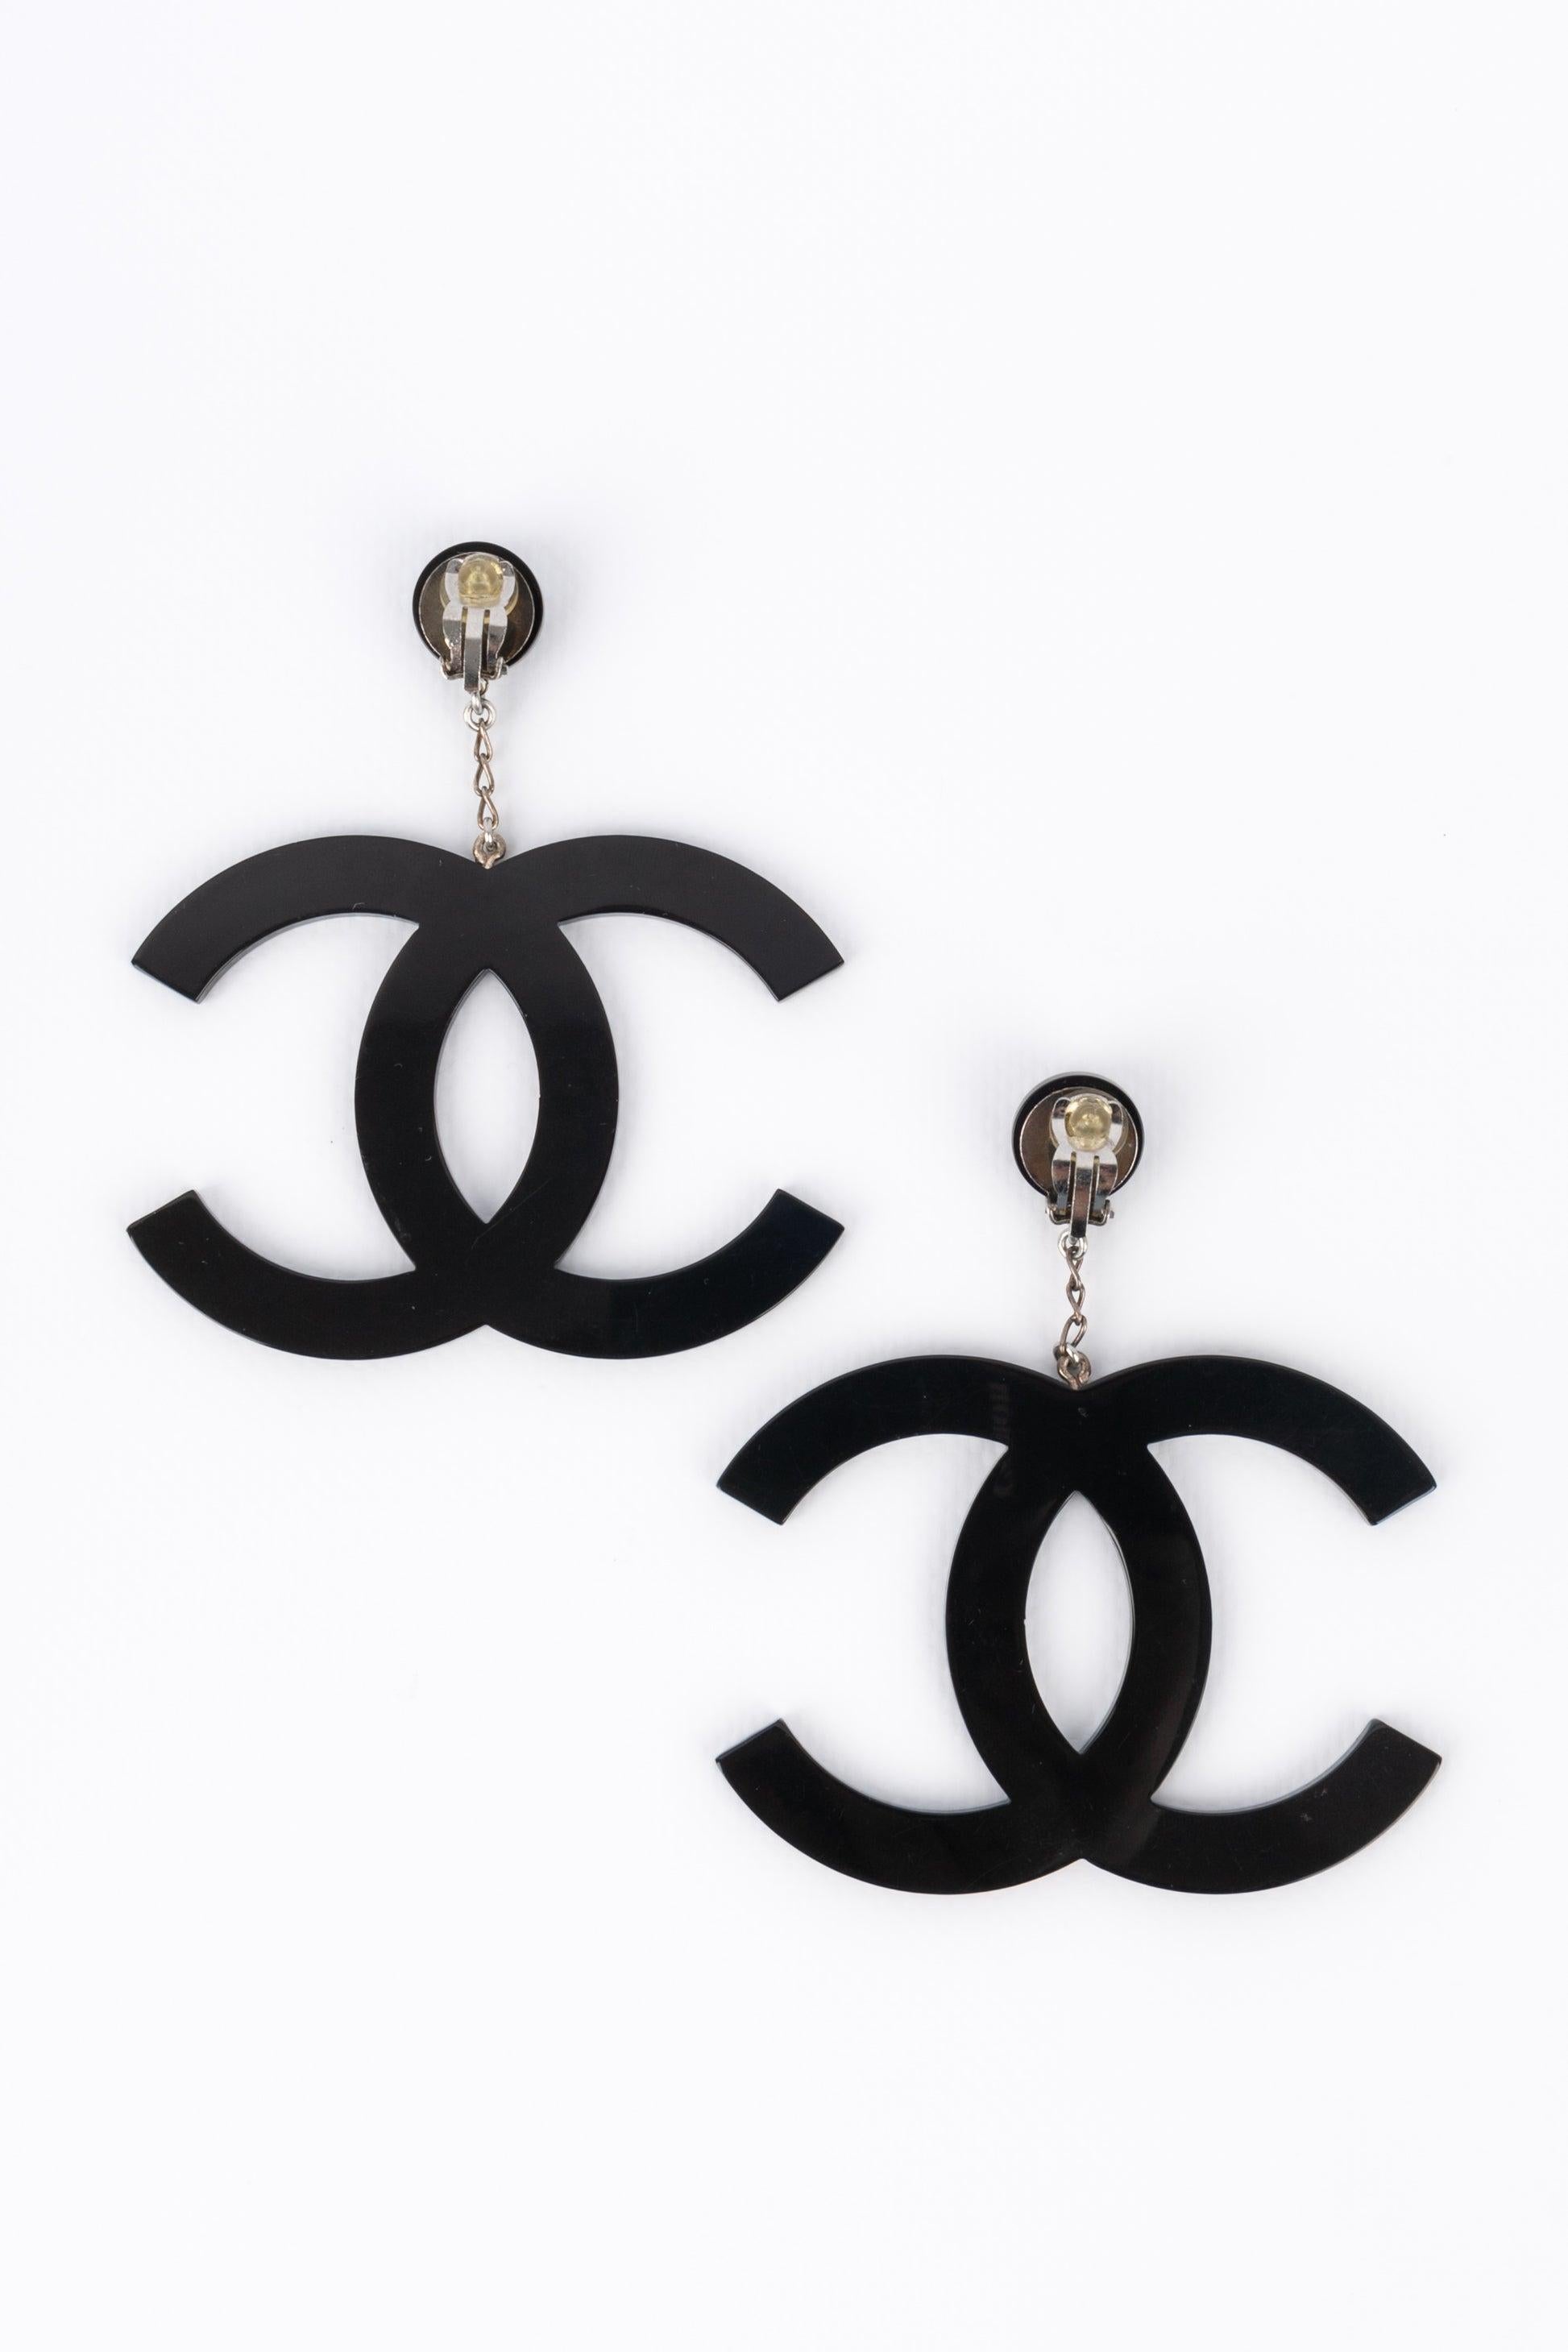 Chanel Black Bakelite CC Logo Earrings, 1996 2